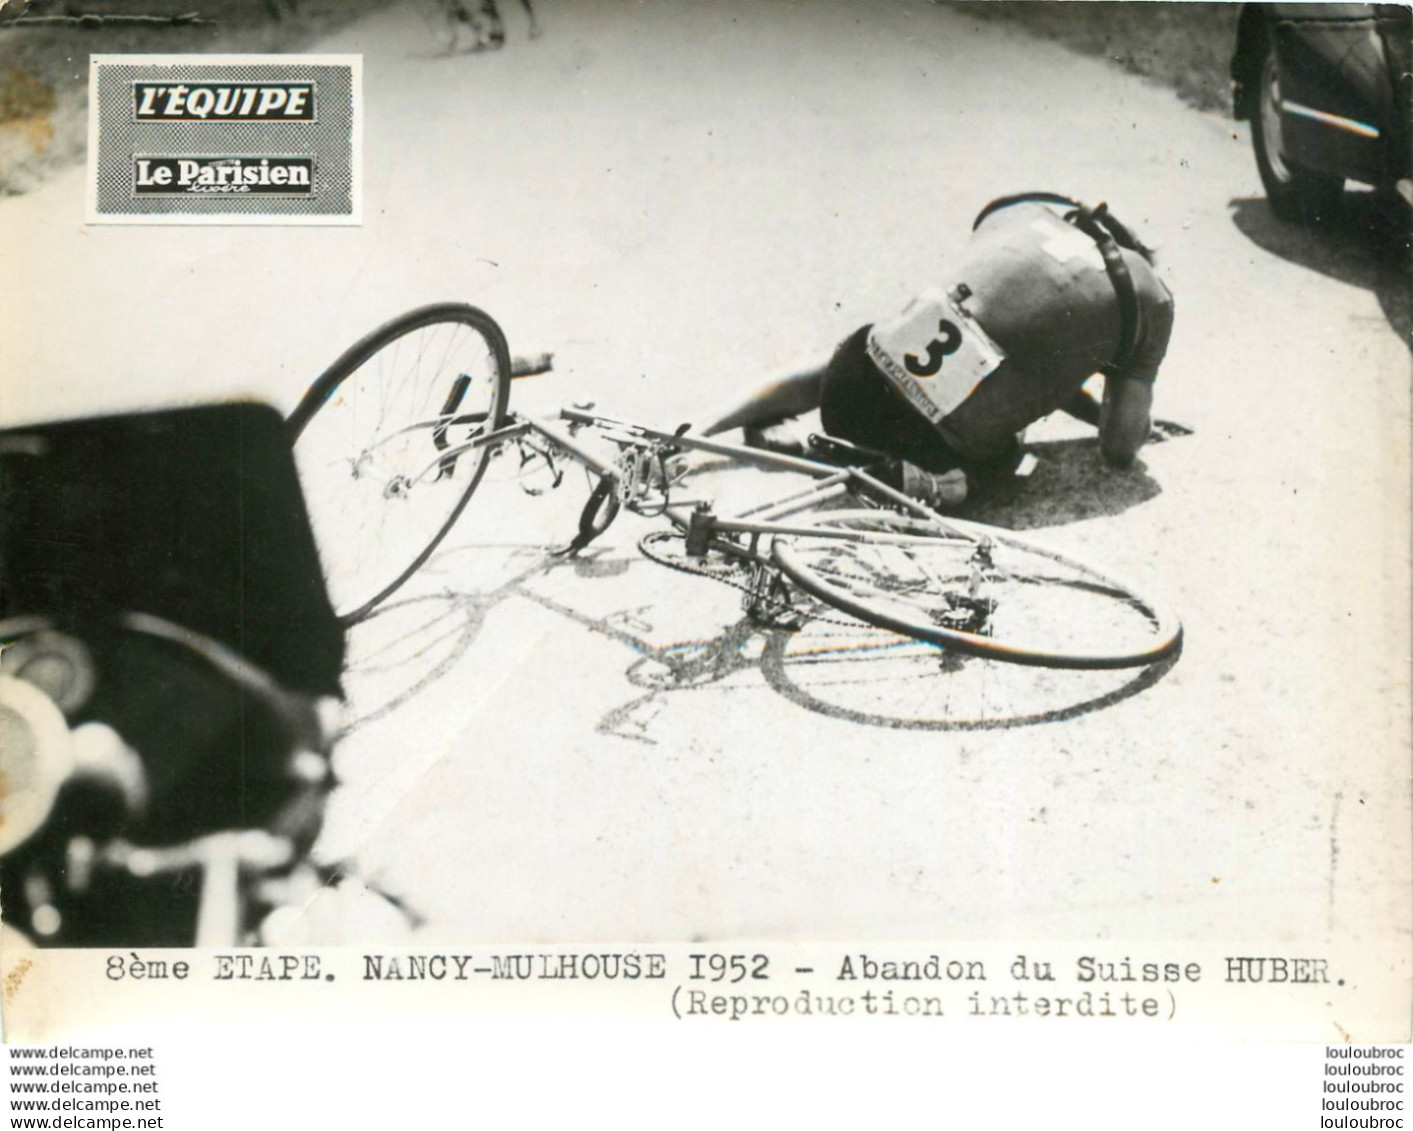 TOUR DE FRANCE 1952 ABANDON DU SUISSE HUBER 8ème ETAPE PHOTO DE PRESSE ORIGINALE ARGENTIQUE  20X15CM EQUIPE  LE PARISIEN - Sports